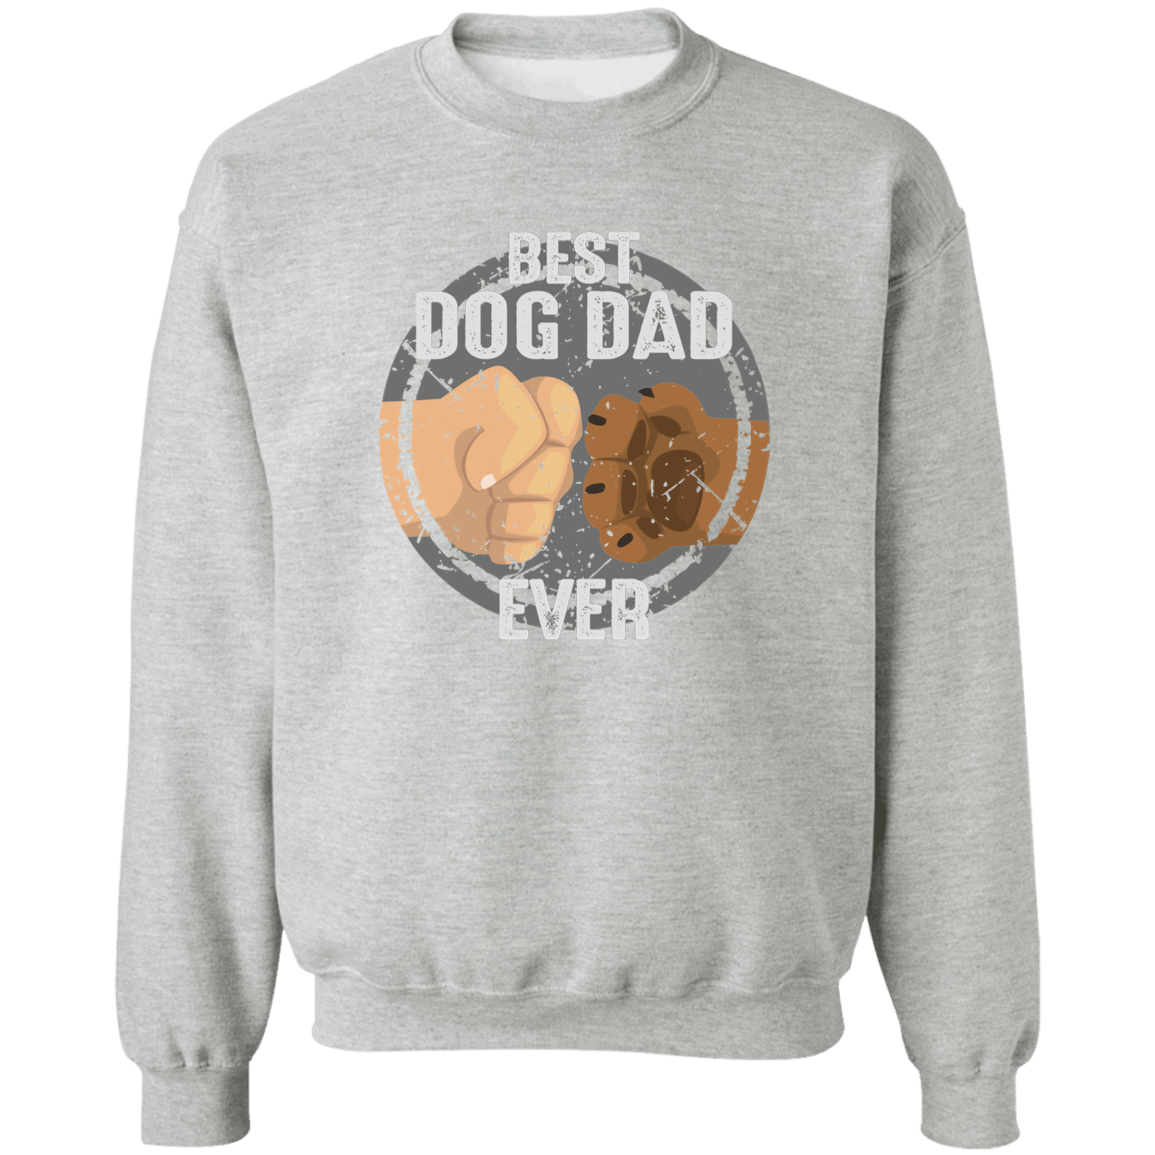 Best Dog Dad Ever - Sweatshirt.